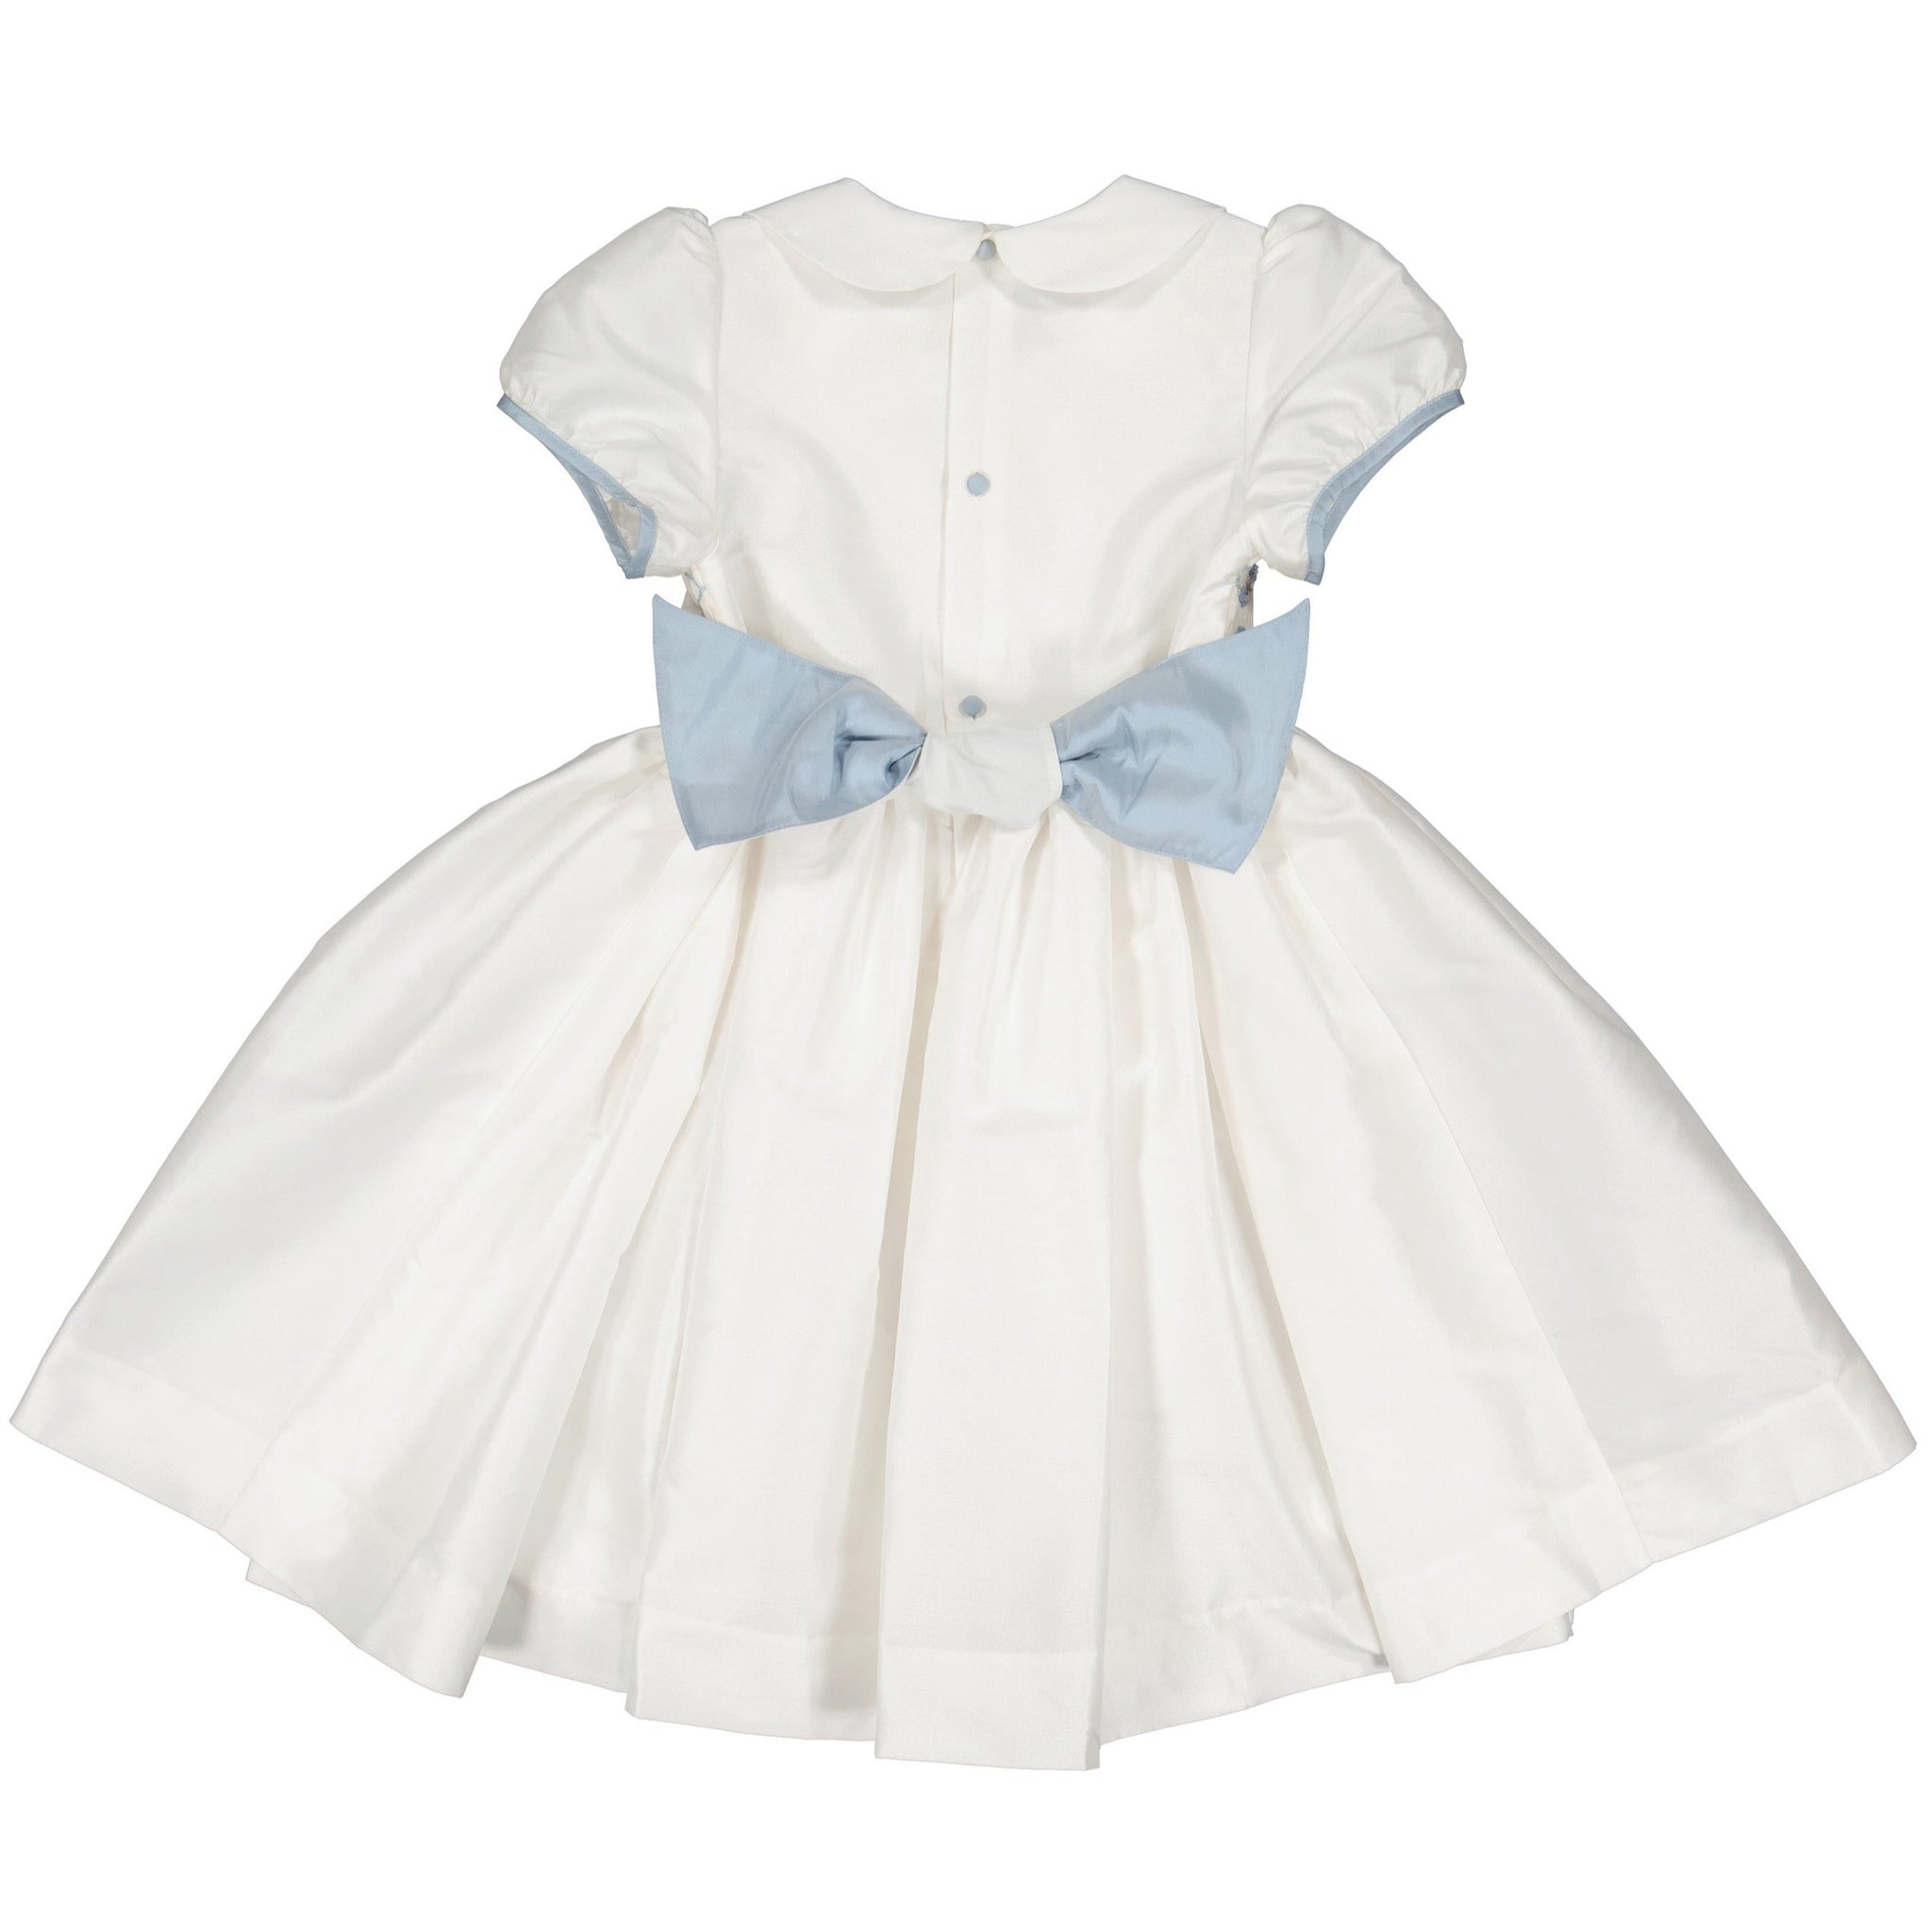 BAGATELLE WHITE/BLUE SILK HANDMADE SMOCKED DRESS